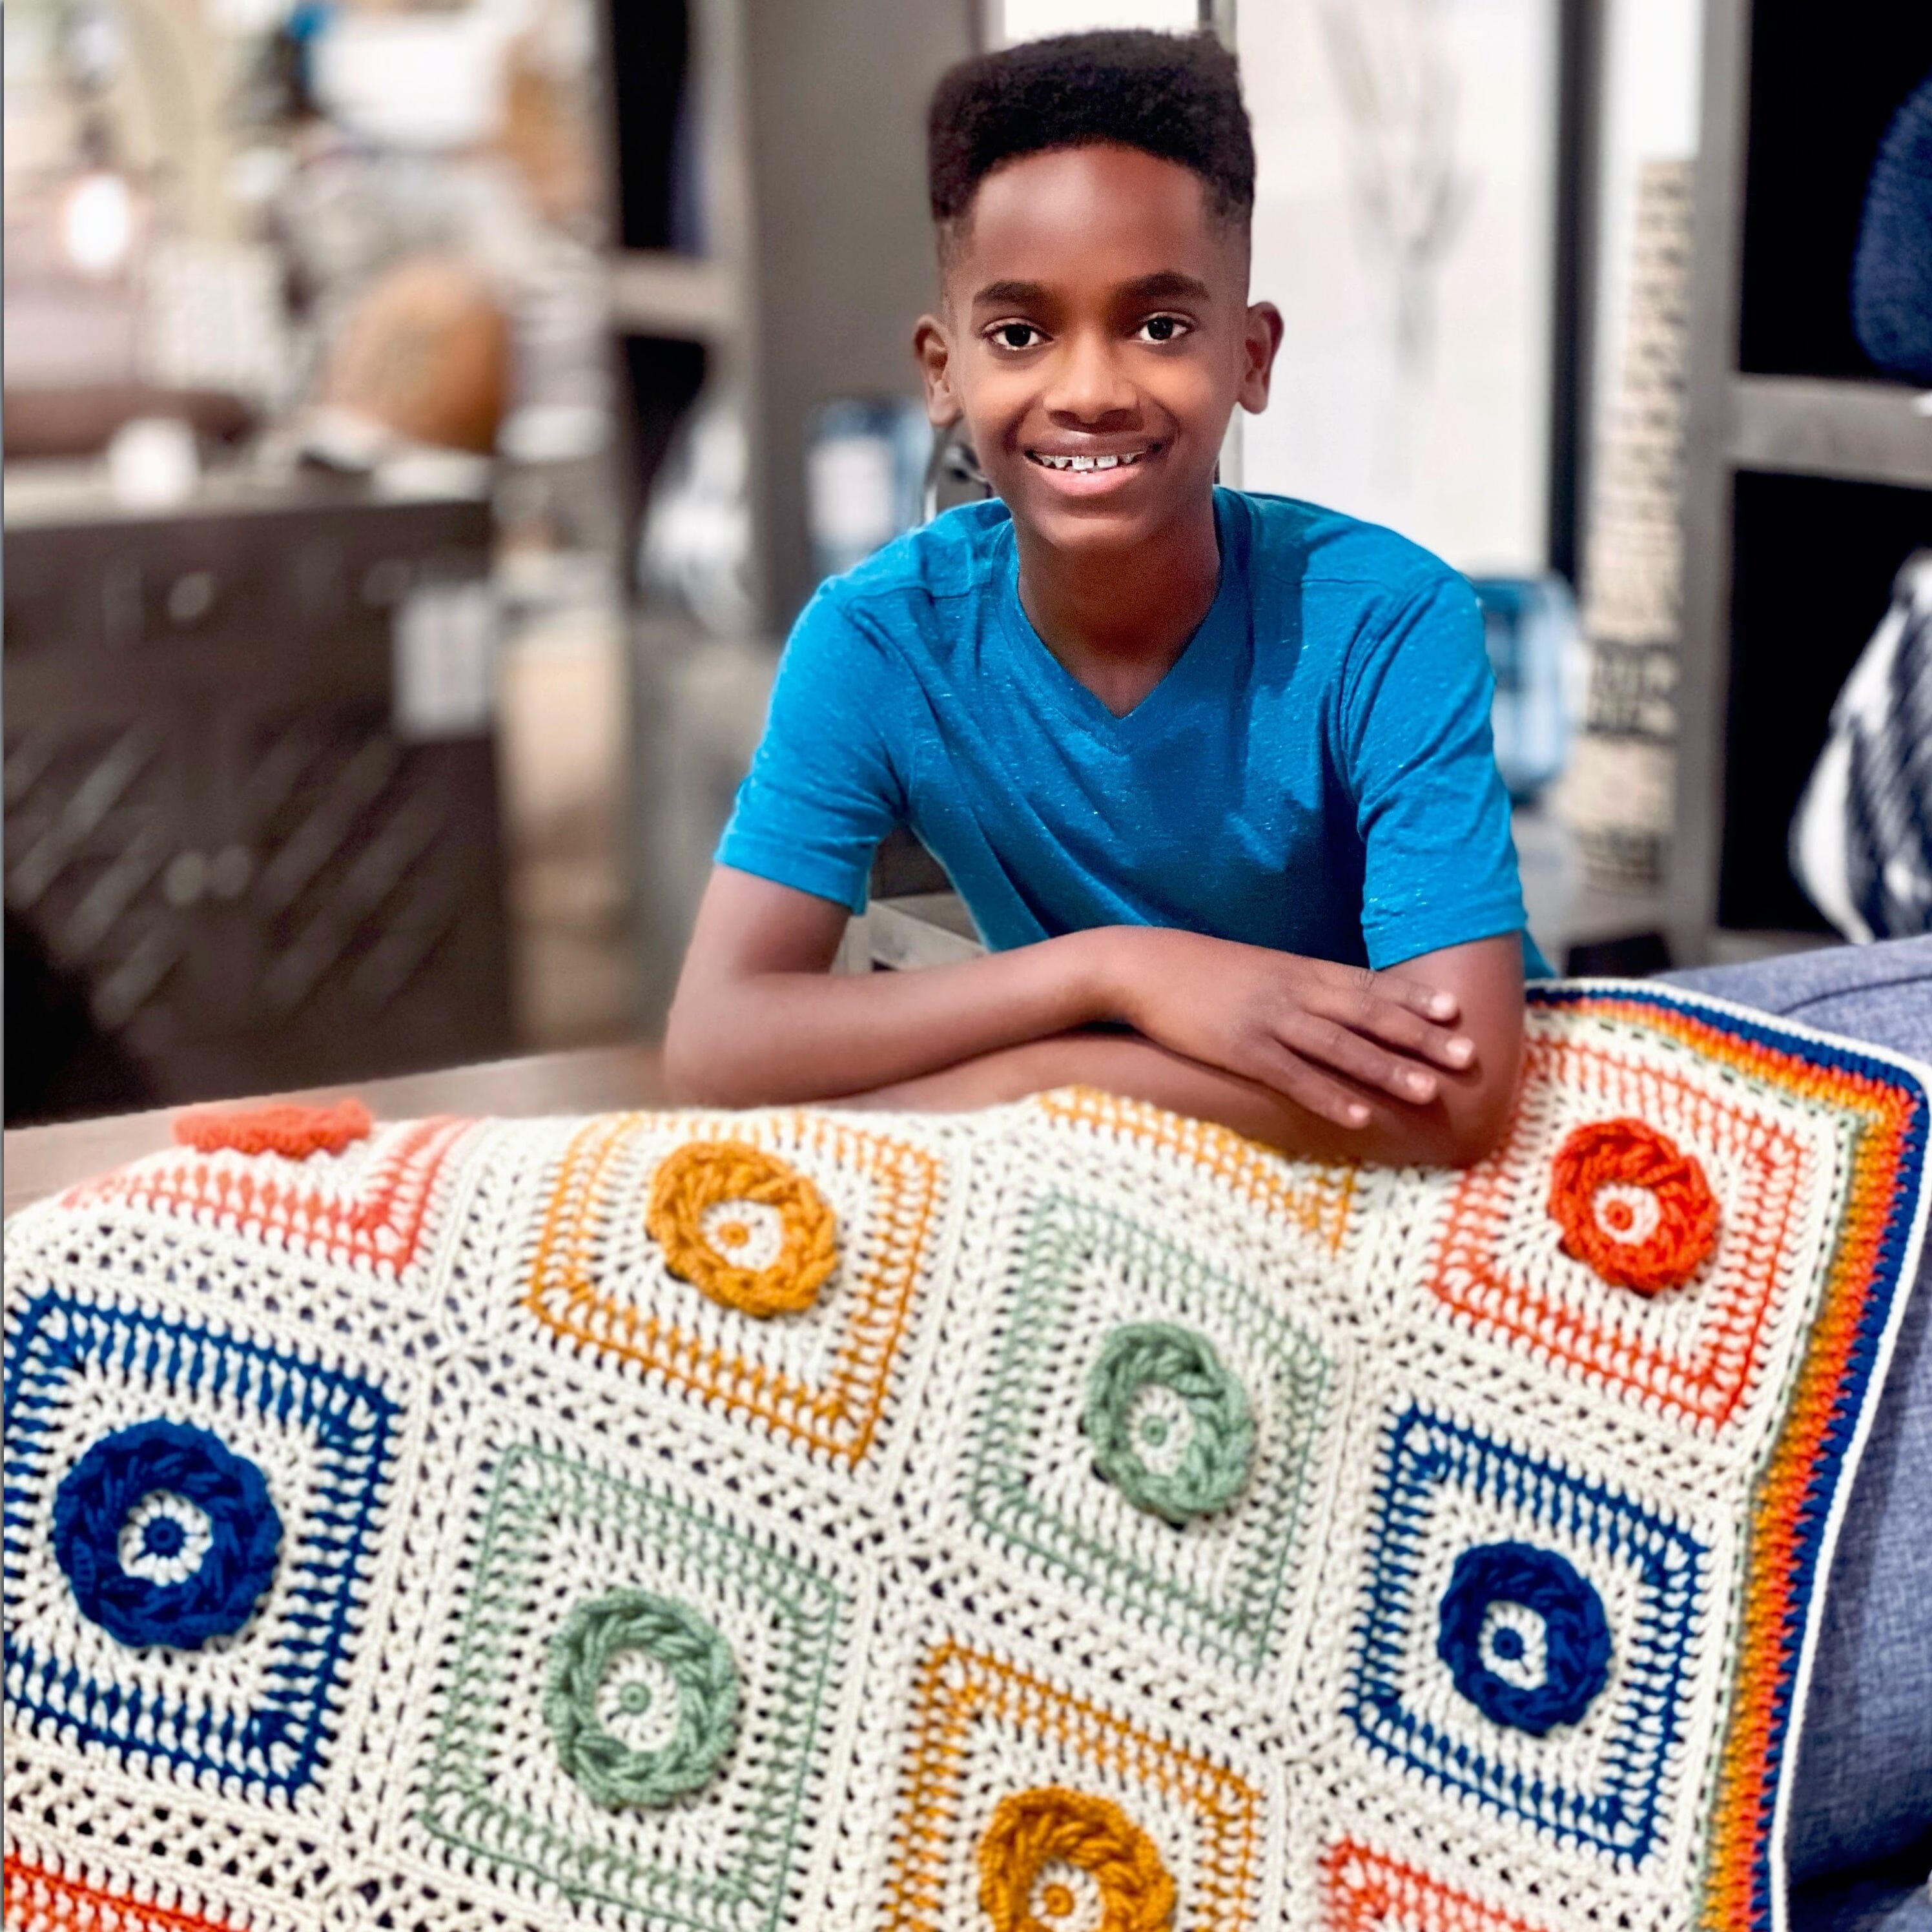 Blanket Crochet Kit for Beginners. Granny Square Crochet -   Crochet  kit, Crochet granny square blanket, Granny square blanket